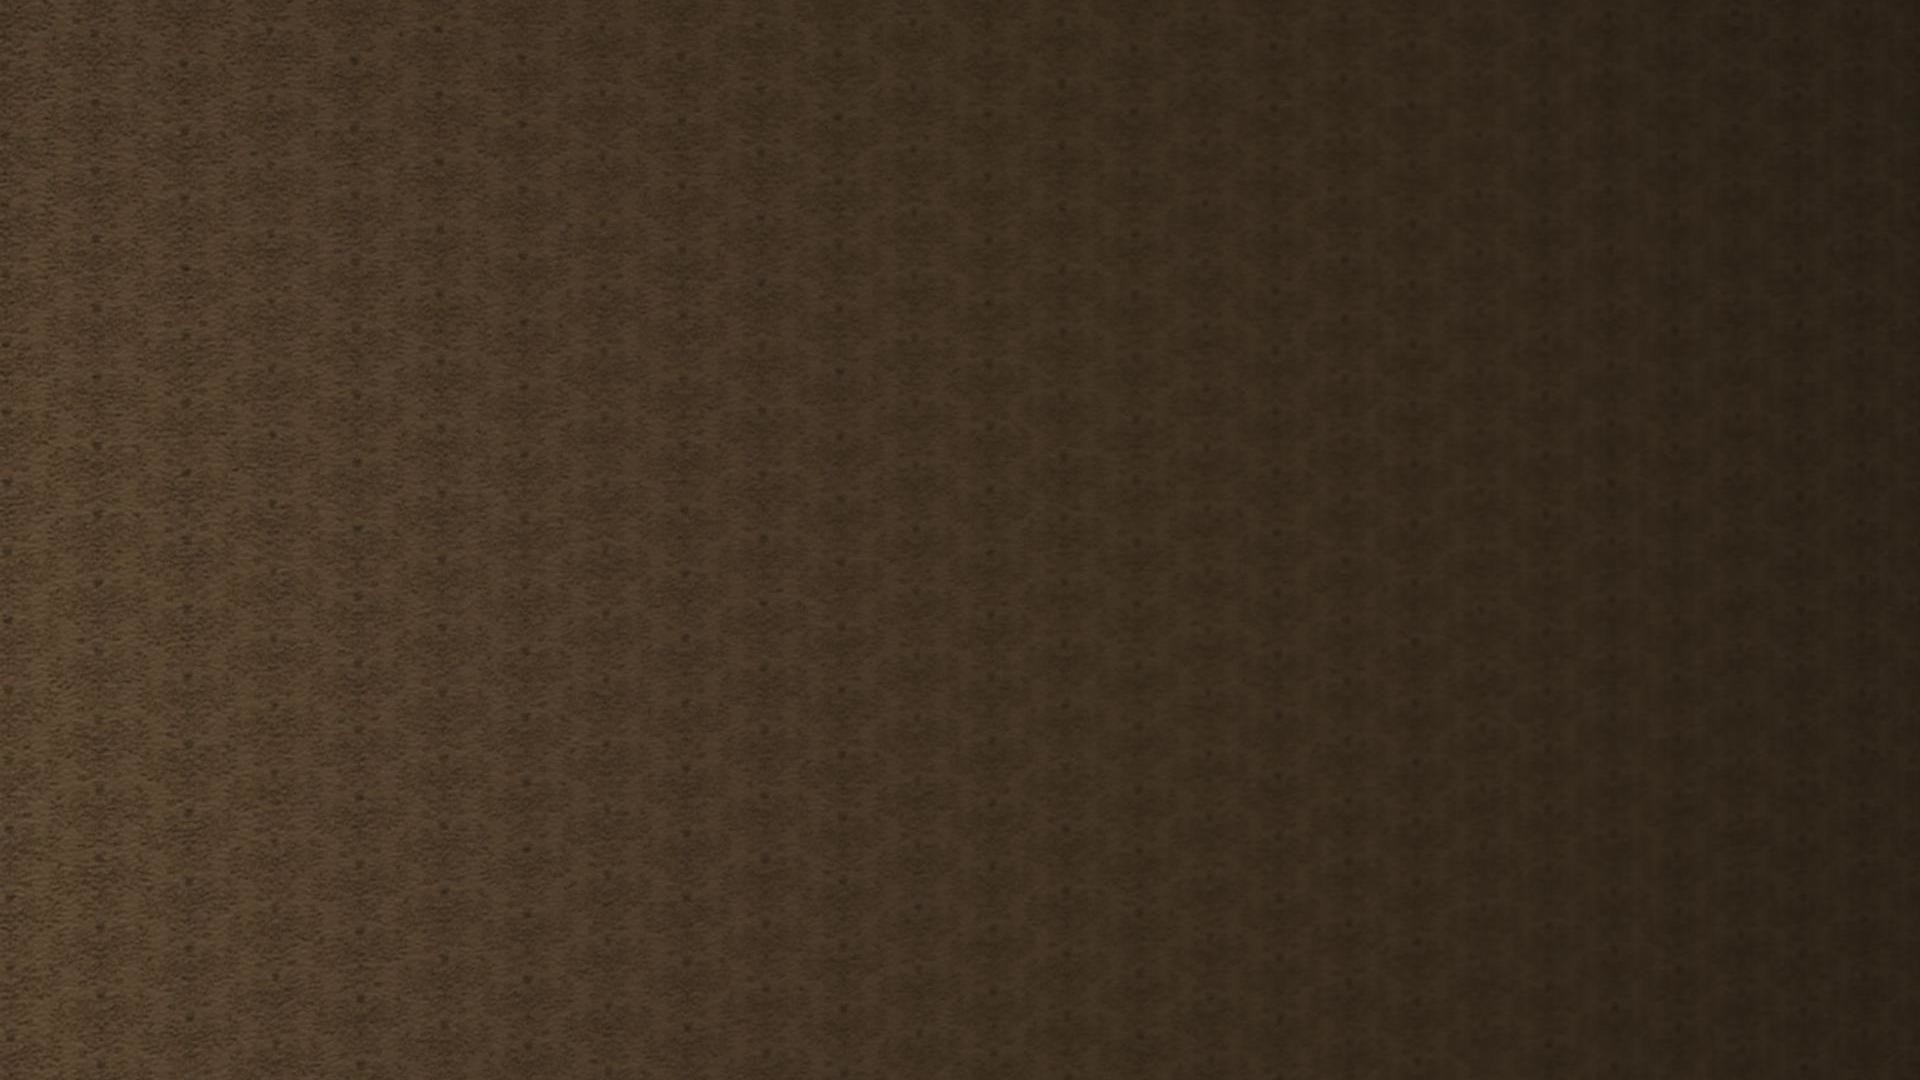 1920x1080 Brown Pattern Wallpaper